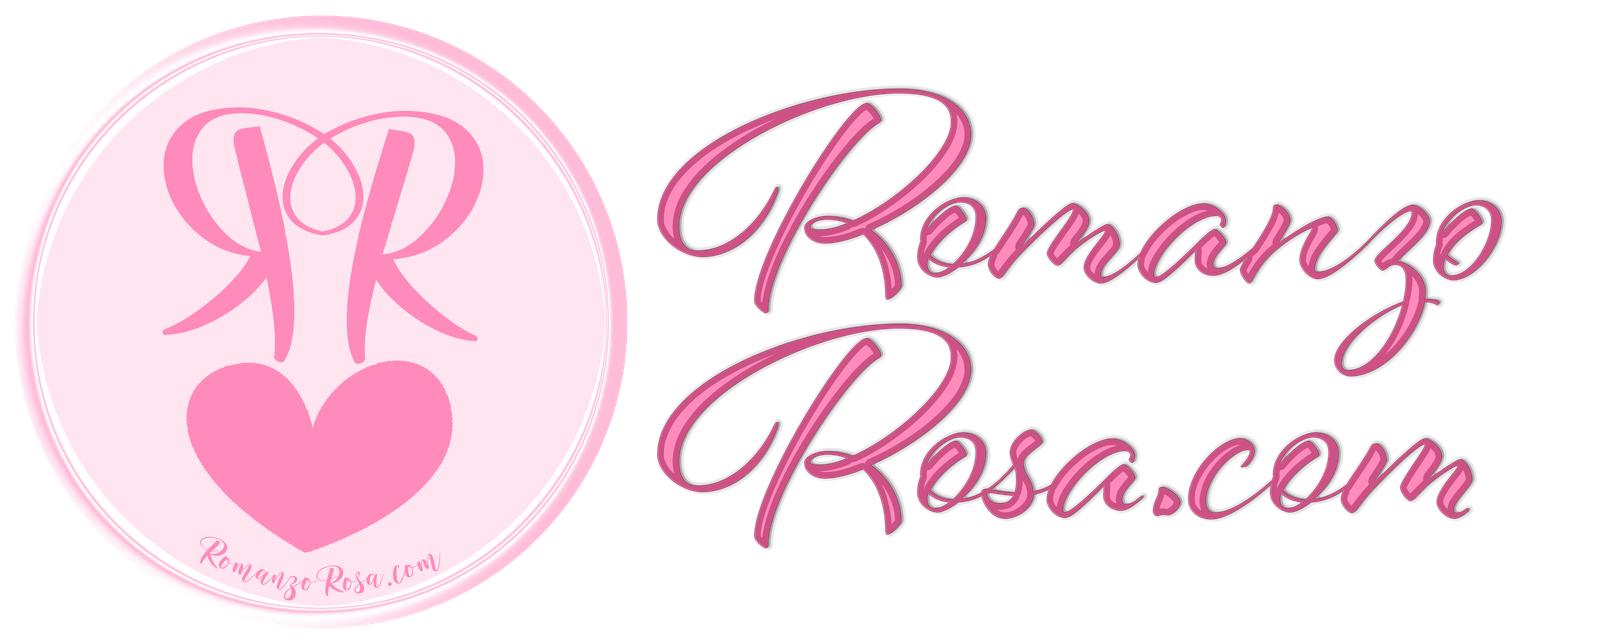 Romanzo Rosa.com il blog ufficiale del romanzo rosa